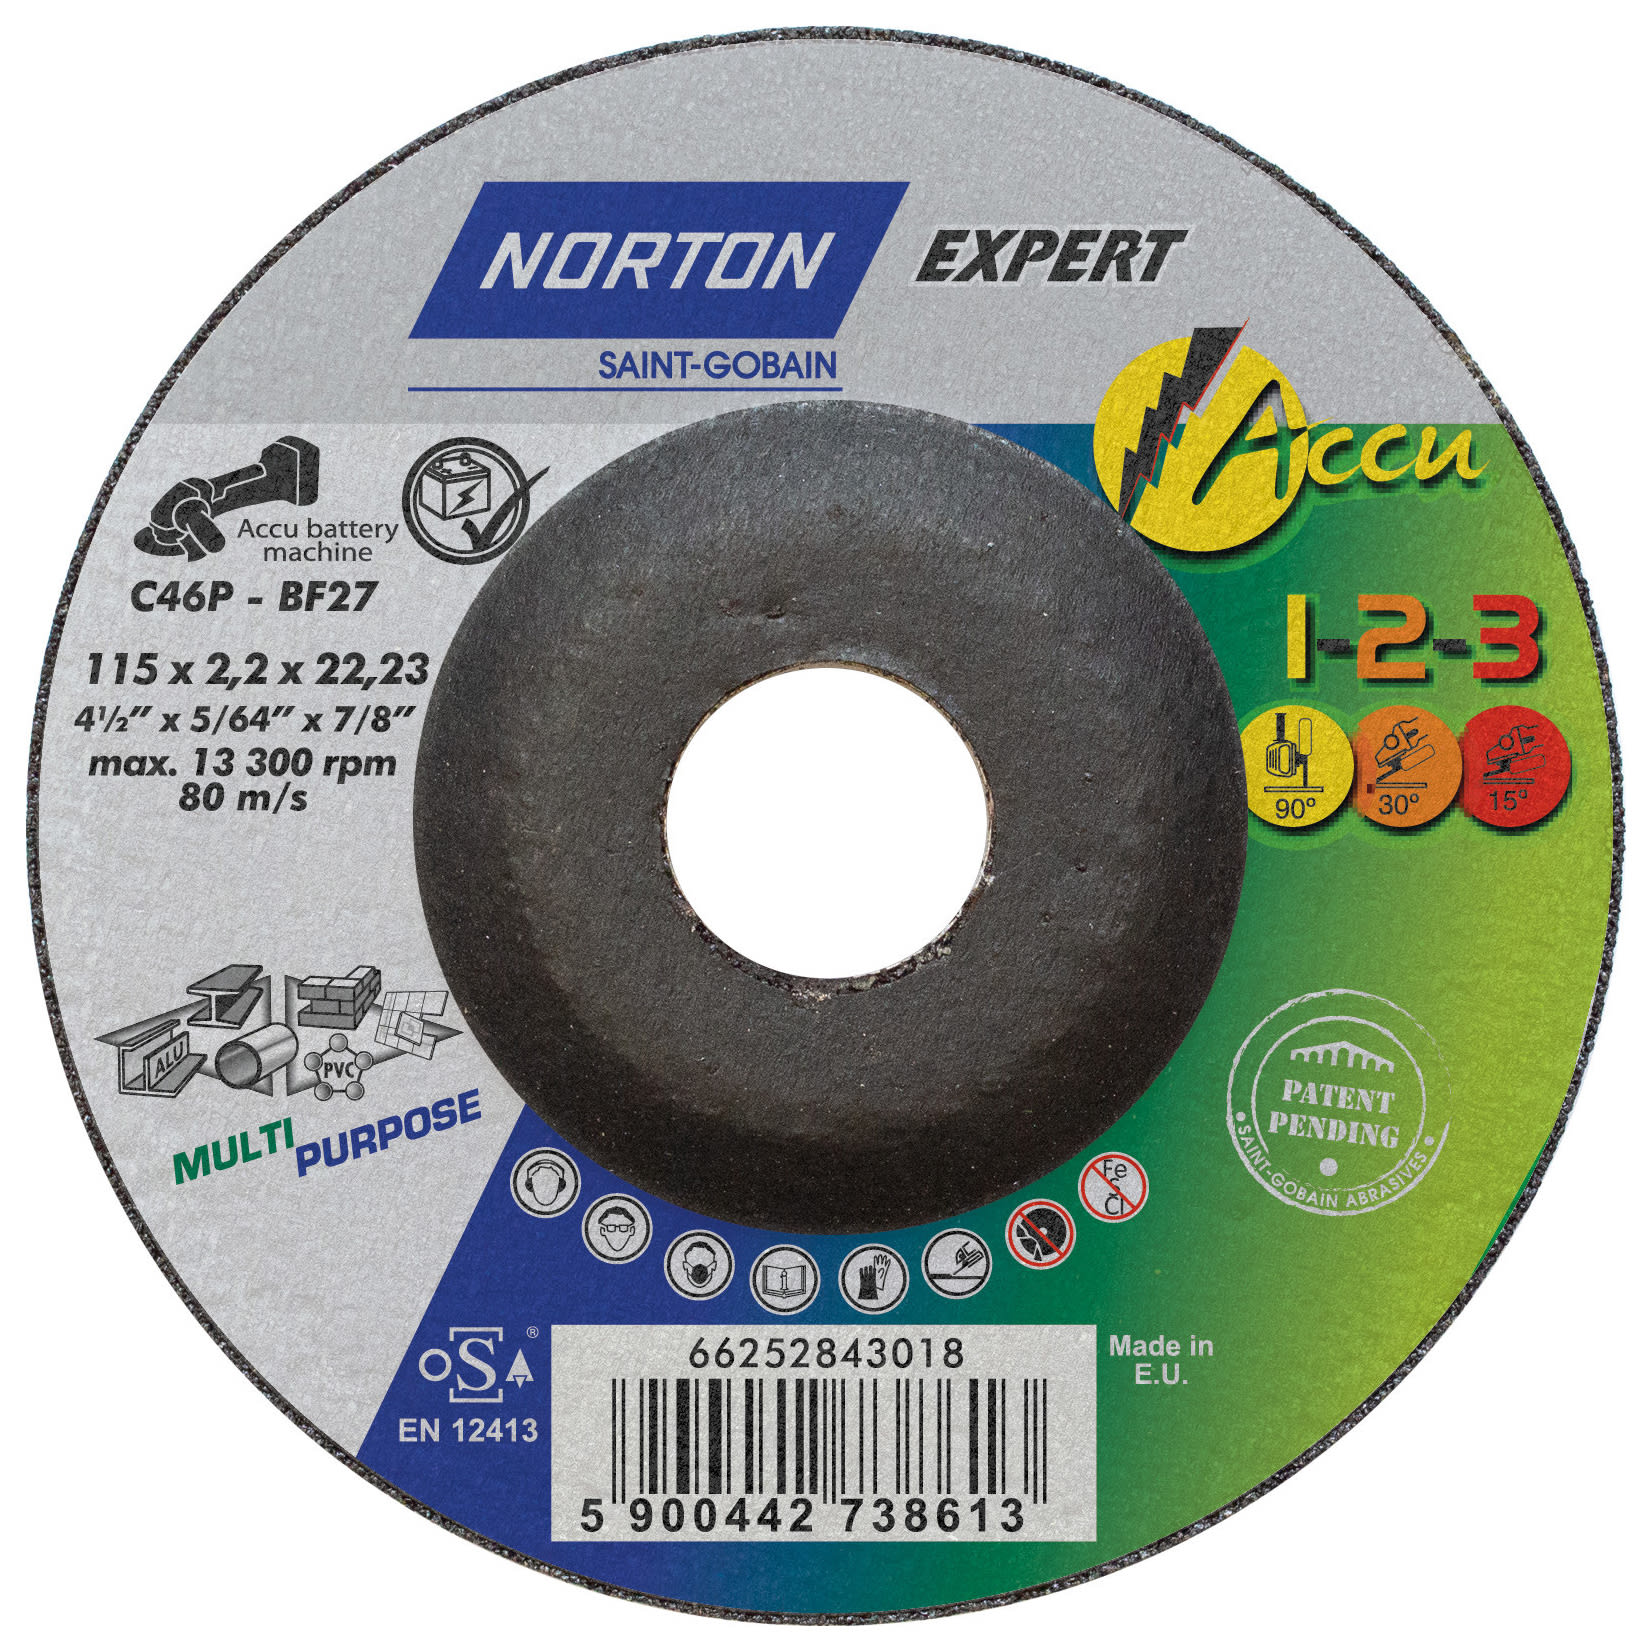 Norton Expert 1-2-3 Multi Purpose Cutting Disc -